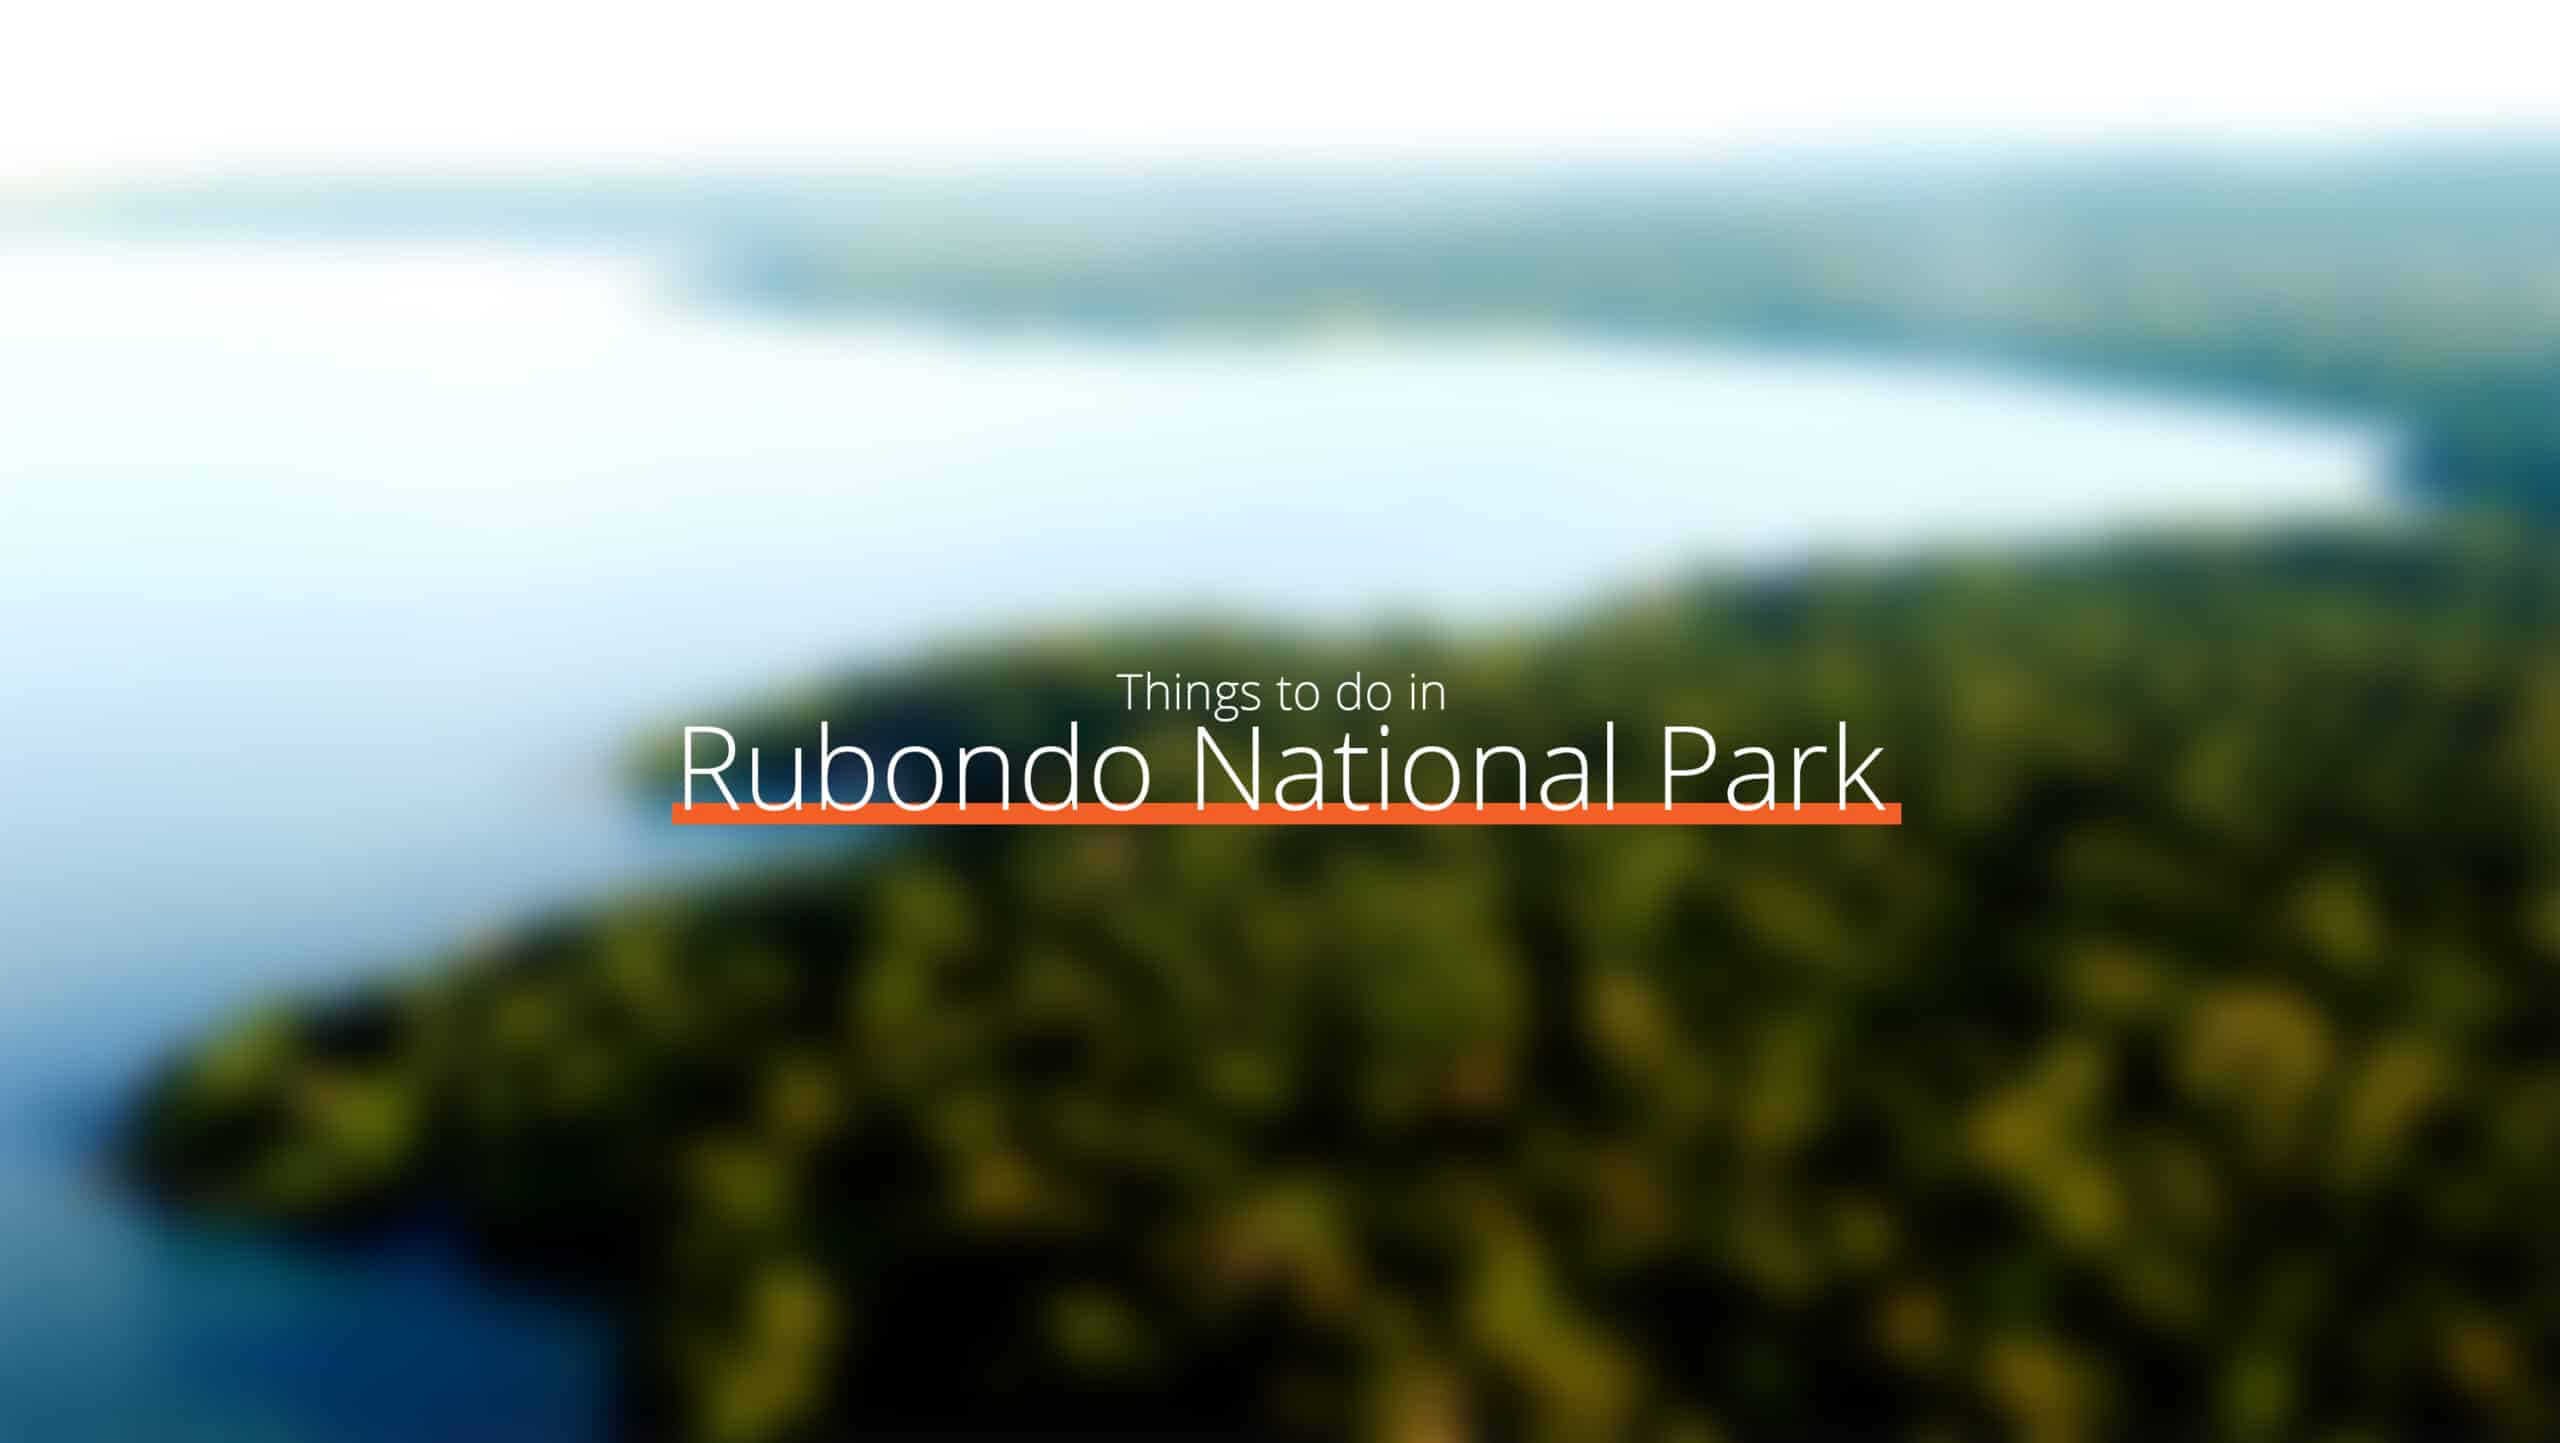 坦桑尼亚 - 鲁邦多国家公园规模扩大 - 去哪里